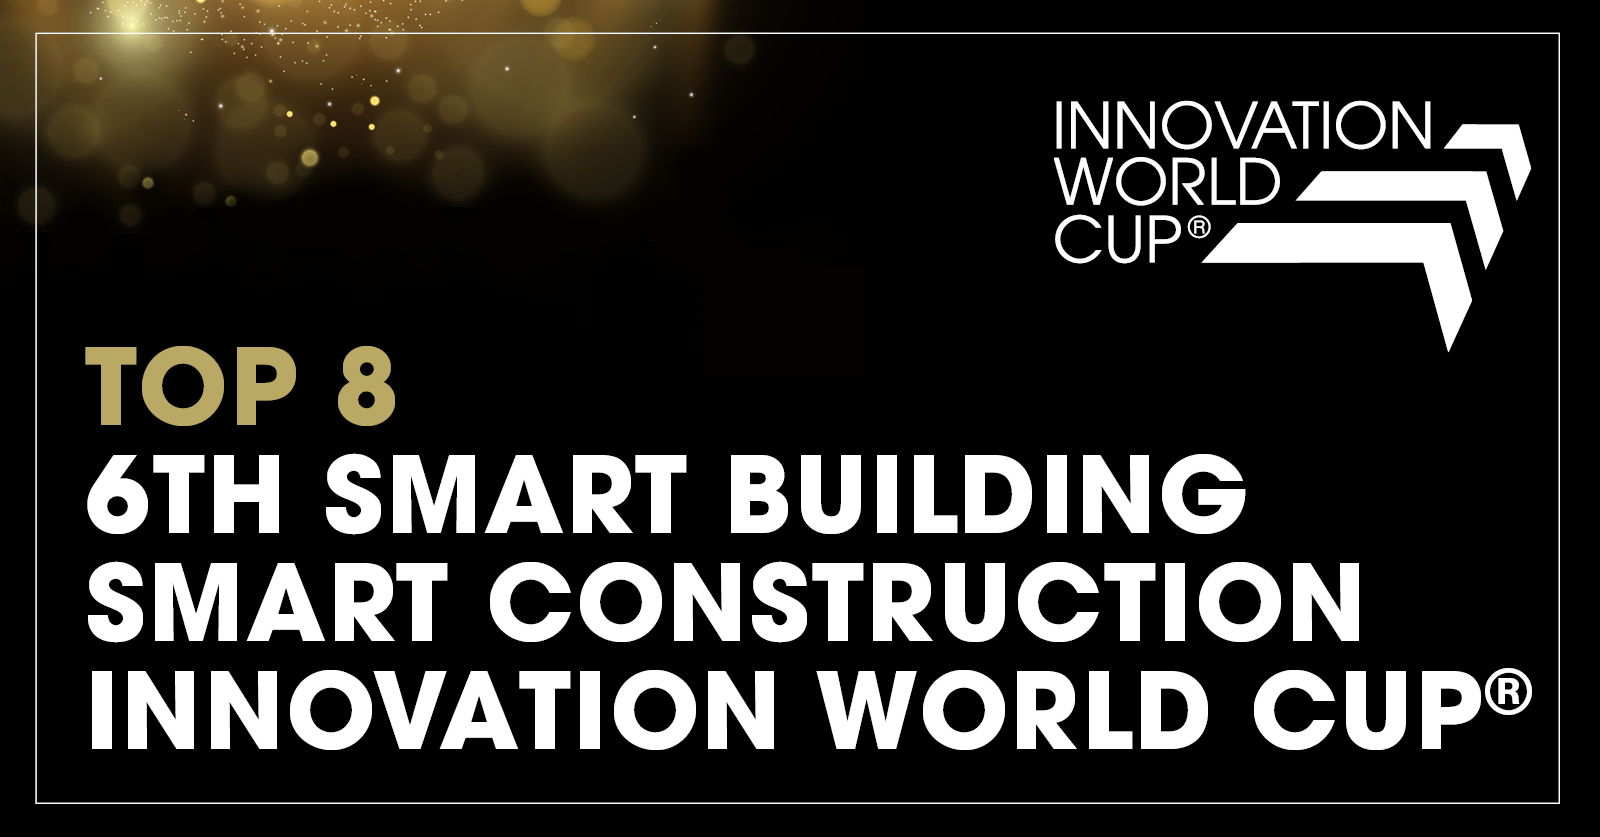 En la Copa Mundial de Innovación © 2023 en Múnich, el especialista europeo en HVAC, Hysopt, ha sido reconocido como uno de los principales innovadores en edificios y construcciones inteligentes del mundo.